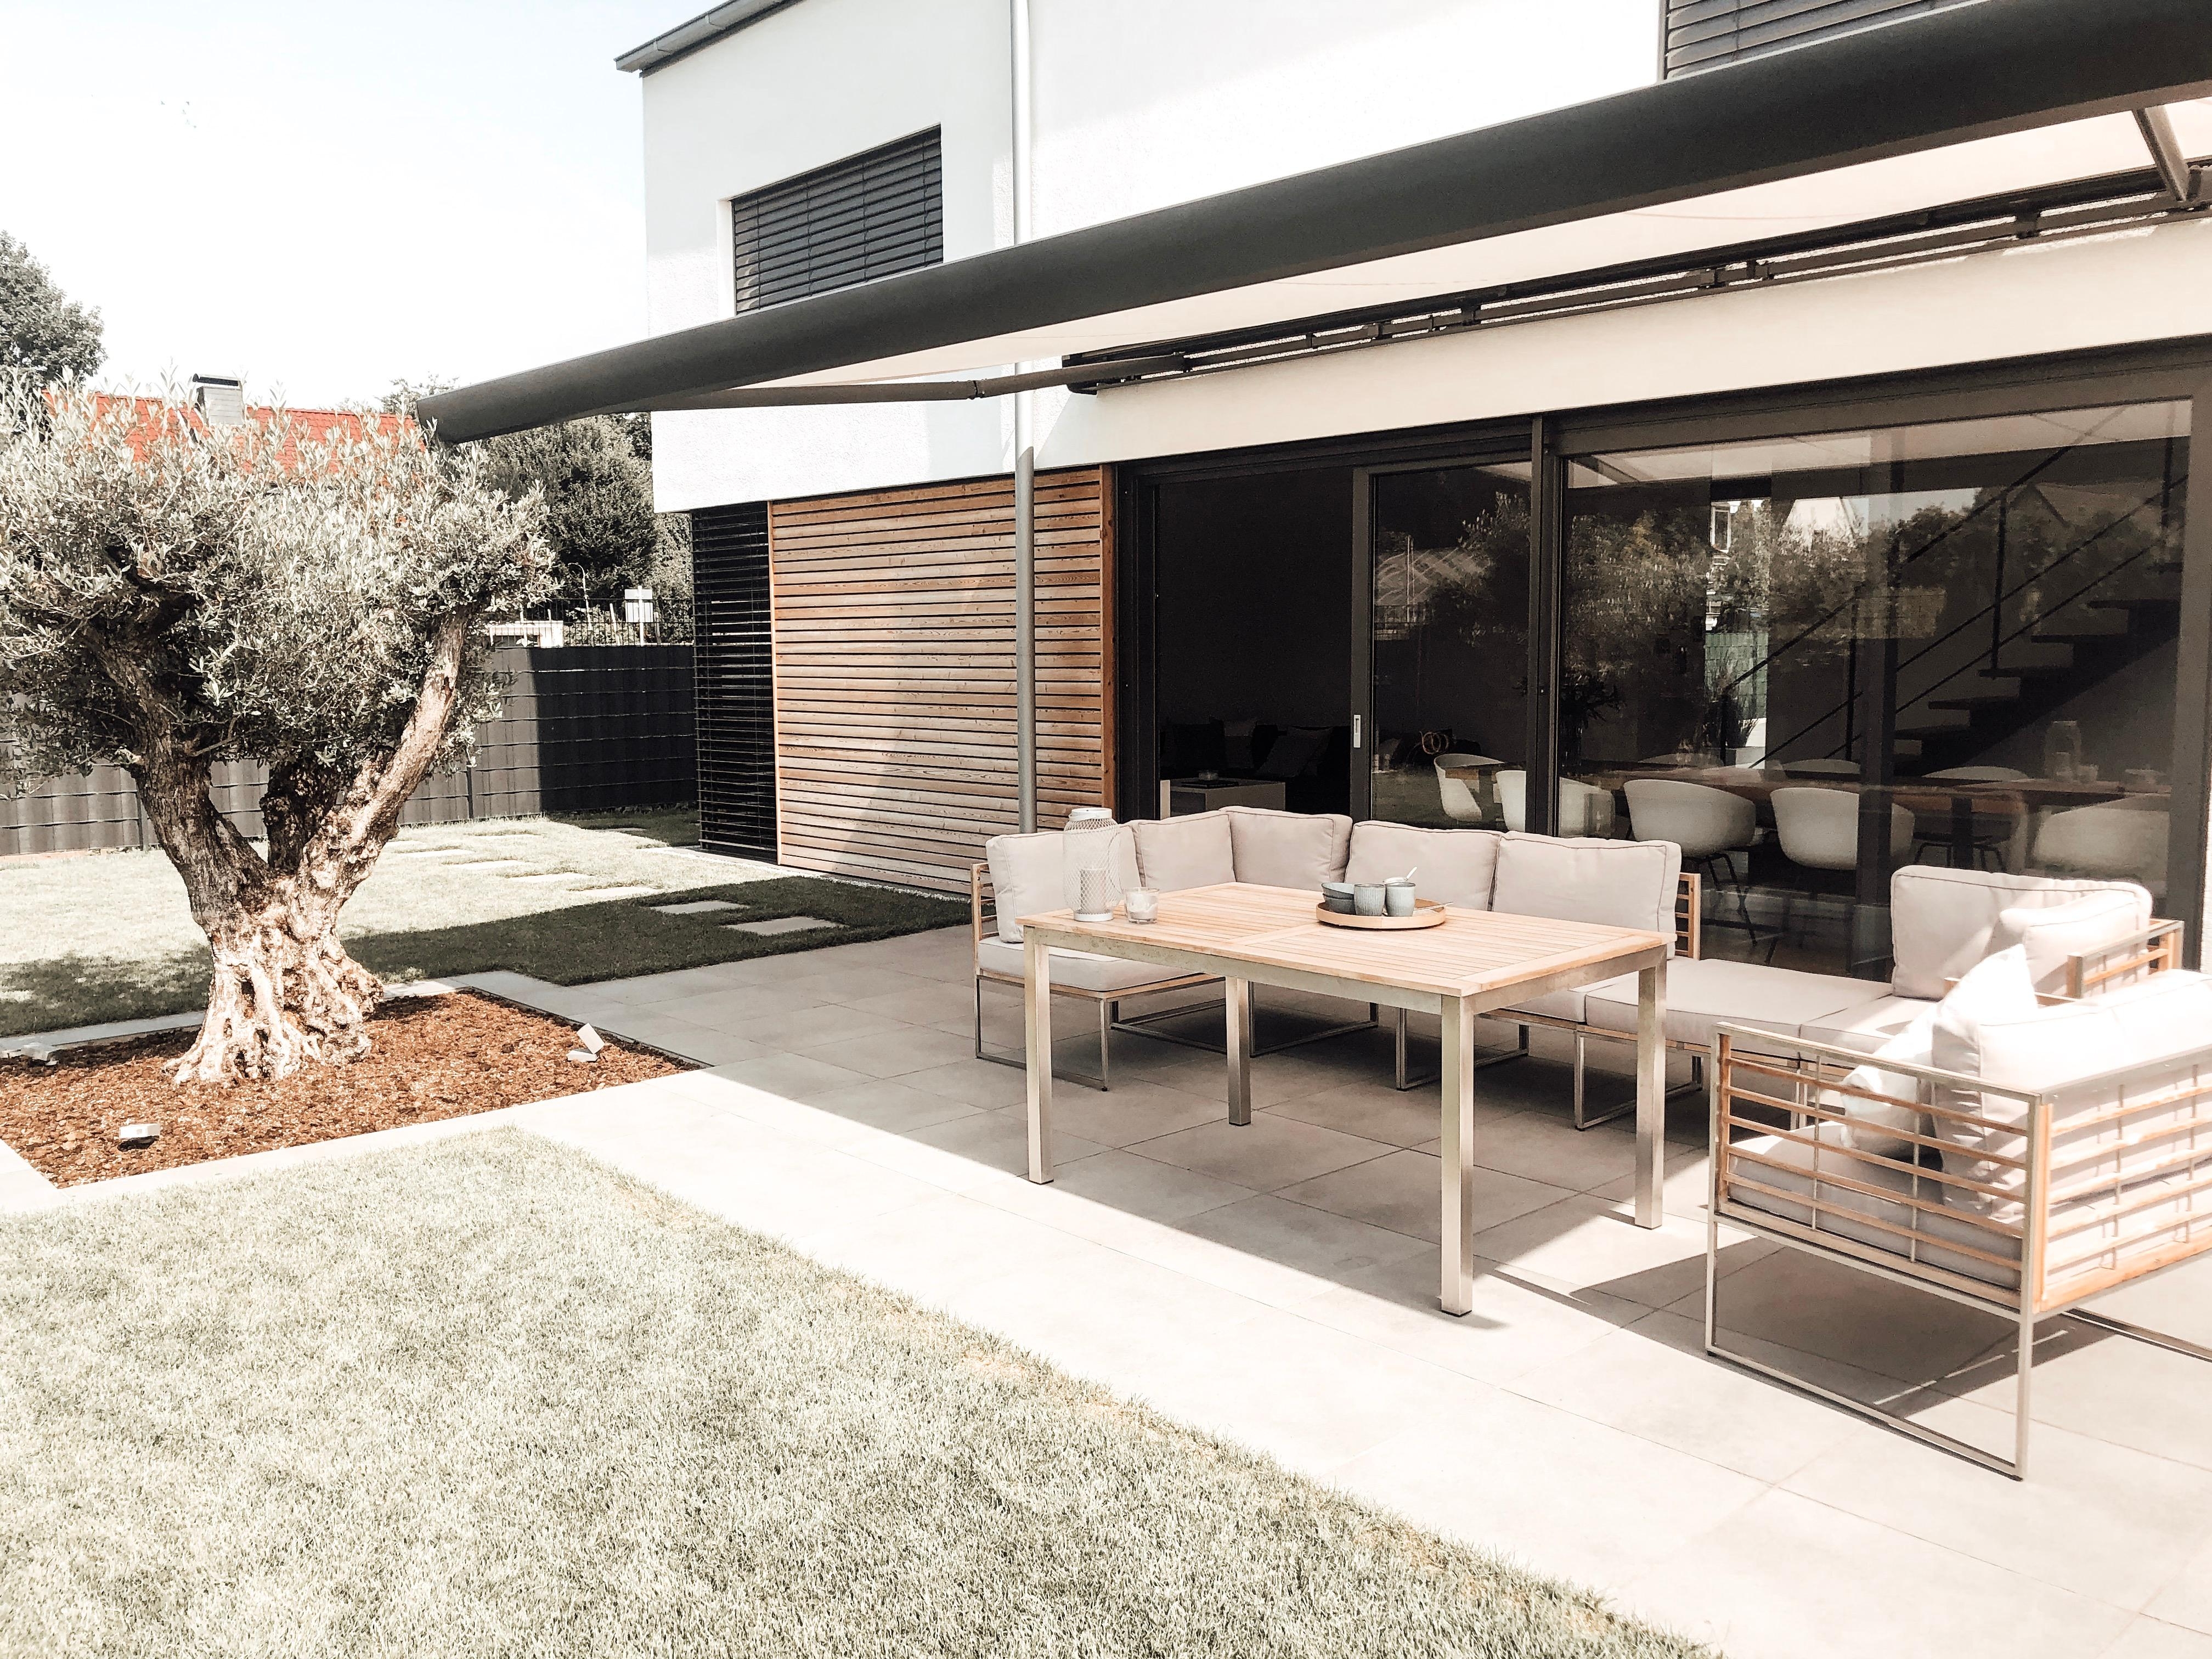 Sommer- und Outdoorliebe #olivenbaum #outdoor #lounge #chillaxing #garden #architektenhaus